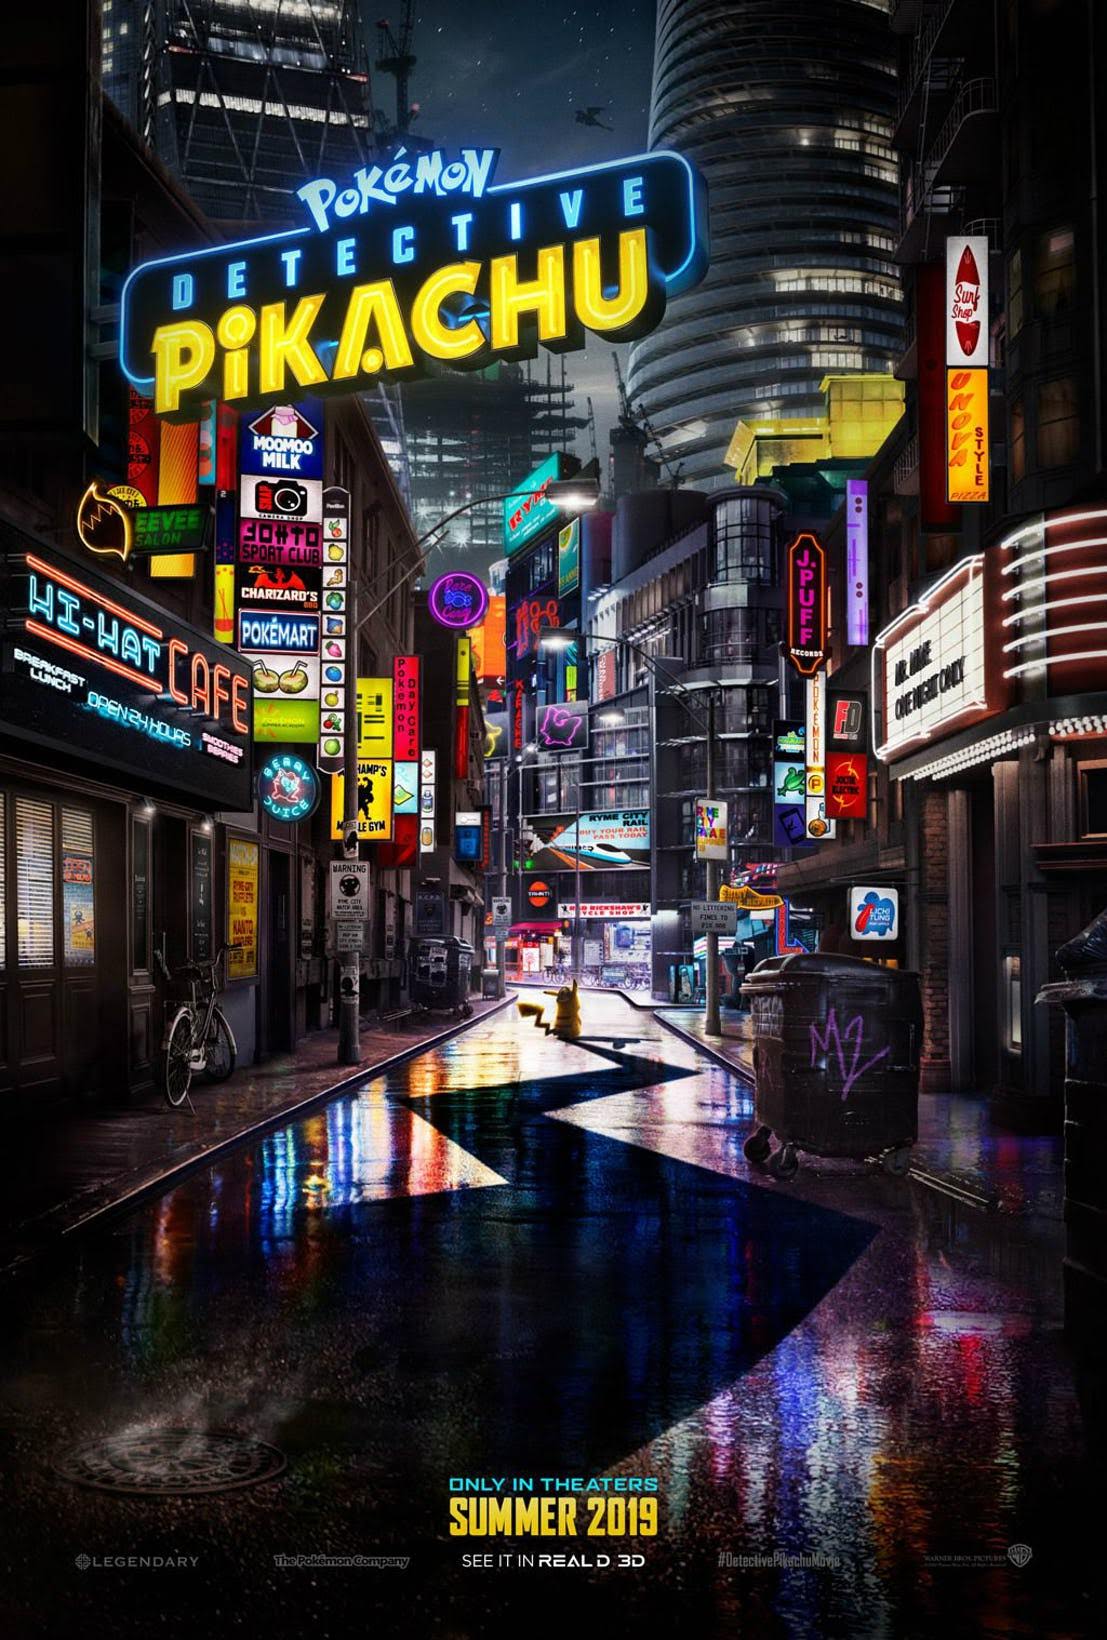 Detective Pikachu デッドプールのライアン レイノルズがピカチュウとして おなじみの減らず口を叩きまくるハリウッド版 ポケモン の実写映画 名探偵ピカチュウ が いきなり全長版の予告編を初公開 Cia Movie News